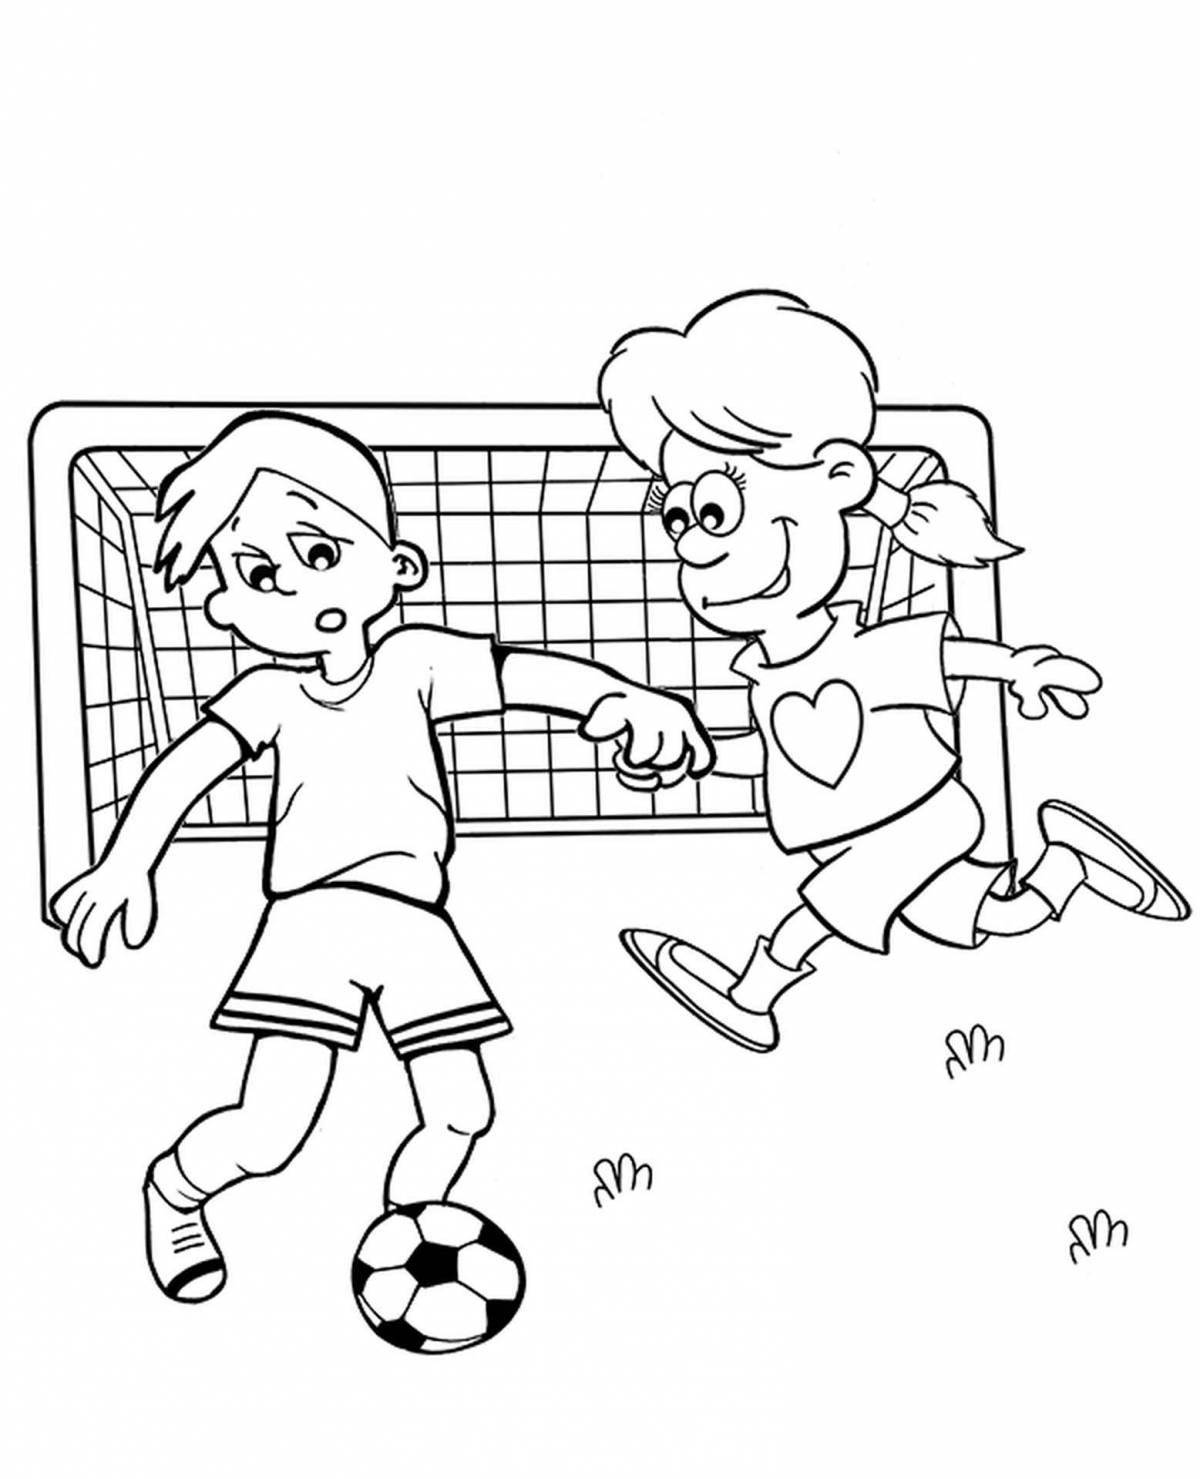 Игра в футбол раскраска для детей